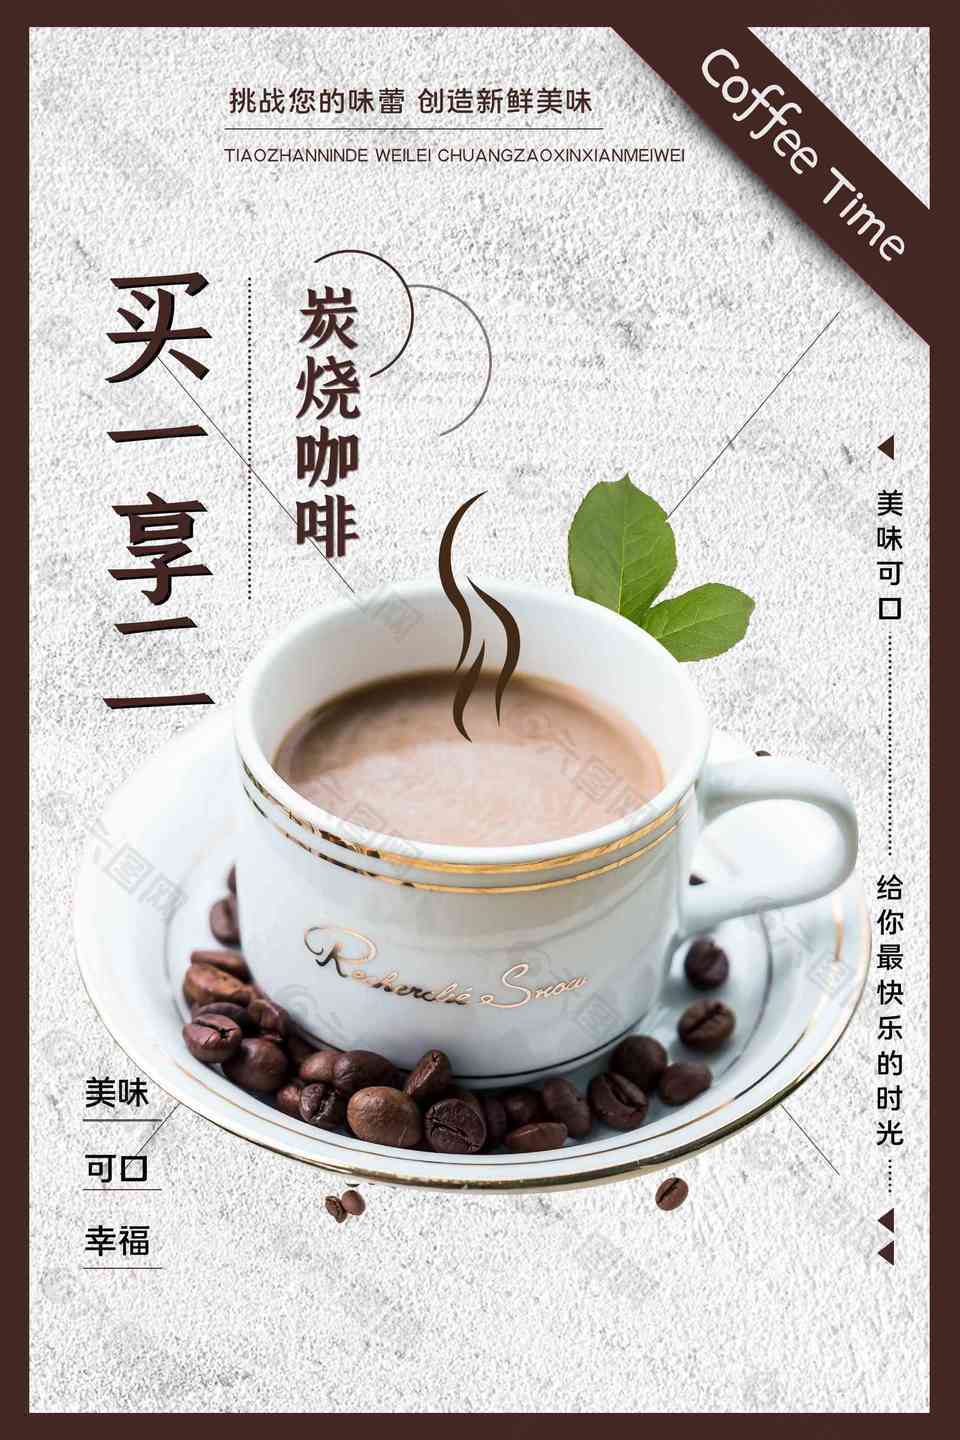 咖啡优惠打折海报设计